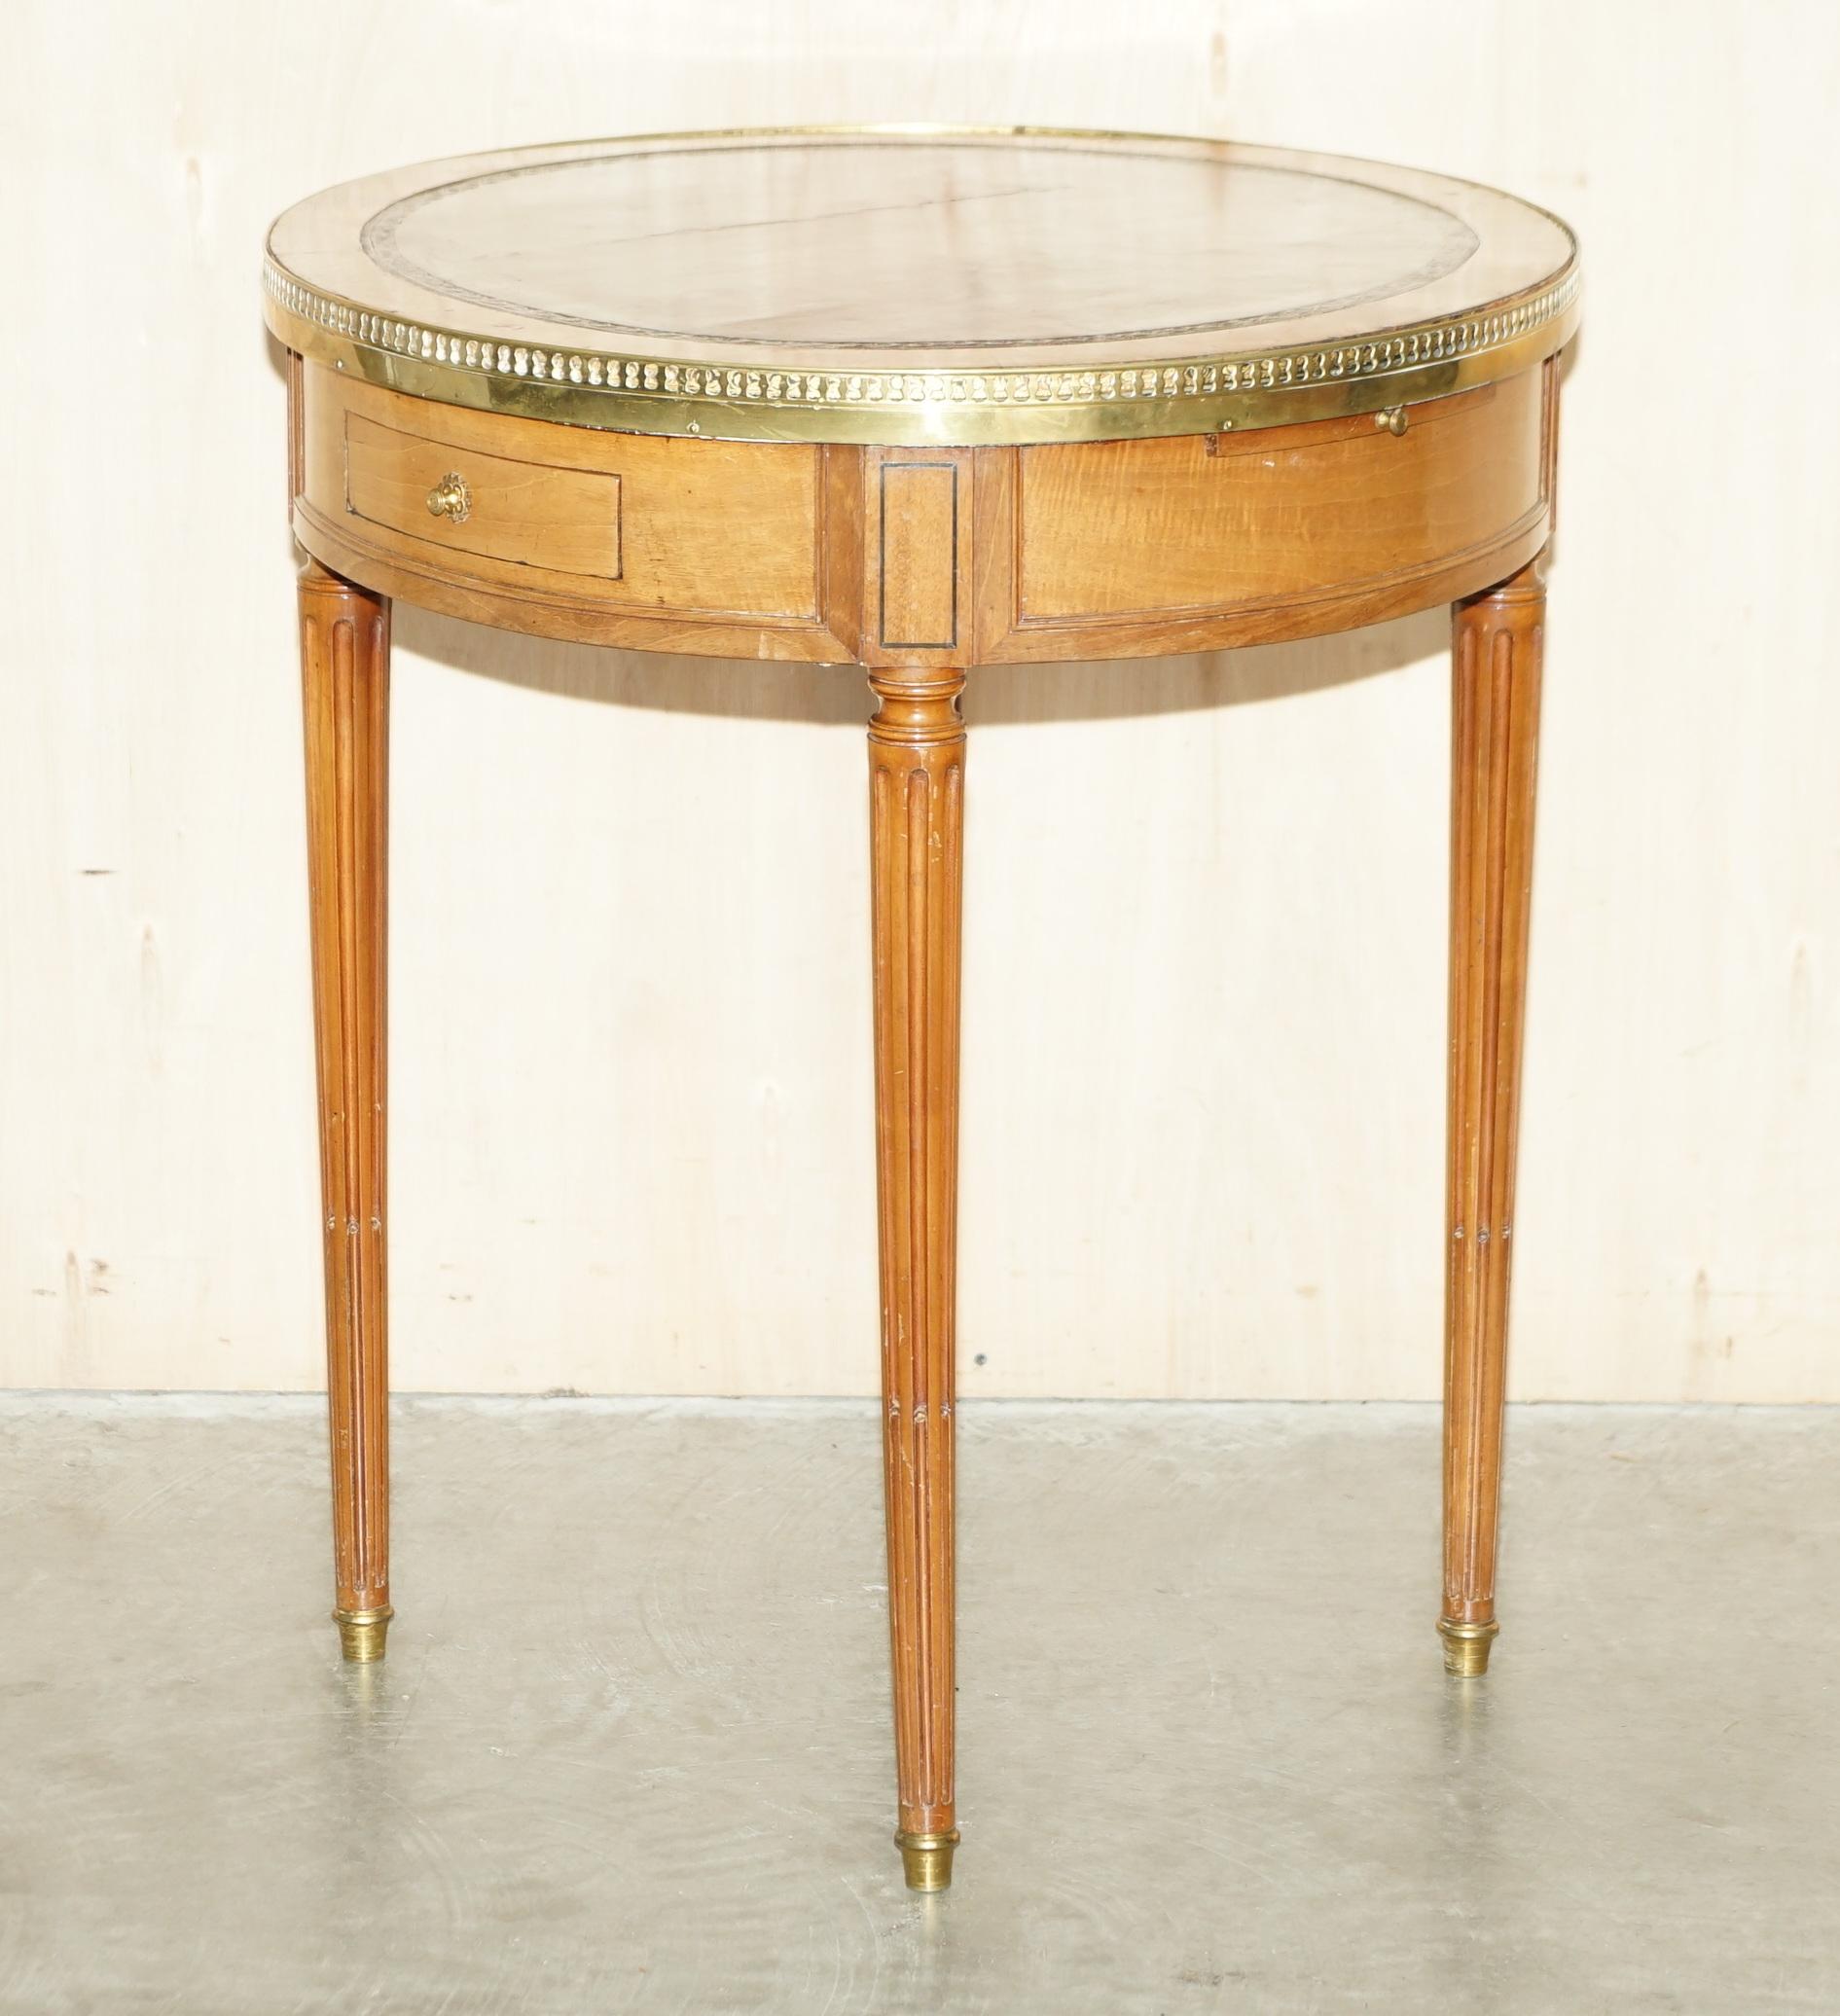 Nous avons le plaisir de proposer à la vente cette charmante table d'appoint Napoléon III entièrement restaurée, avec galerie en laiton, plateau en cuir brun et plateaux de service coulissants. 

Une belle table bien faite et désirable, elle a une